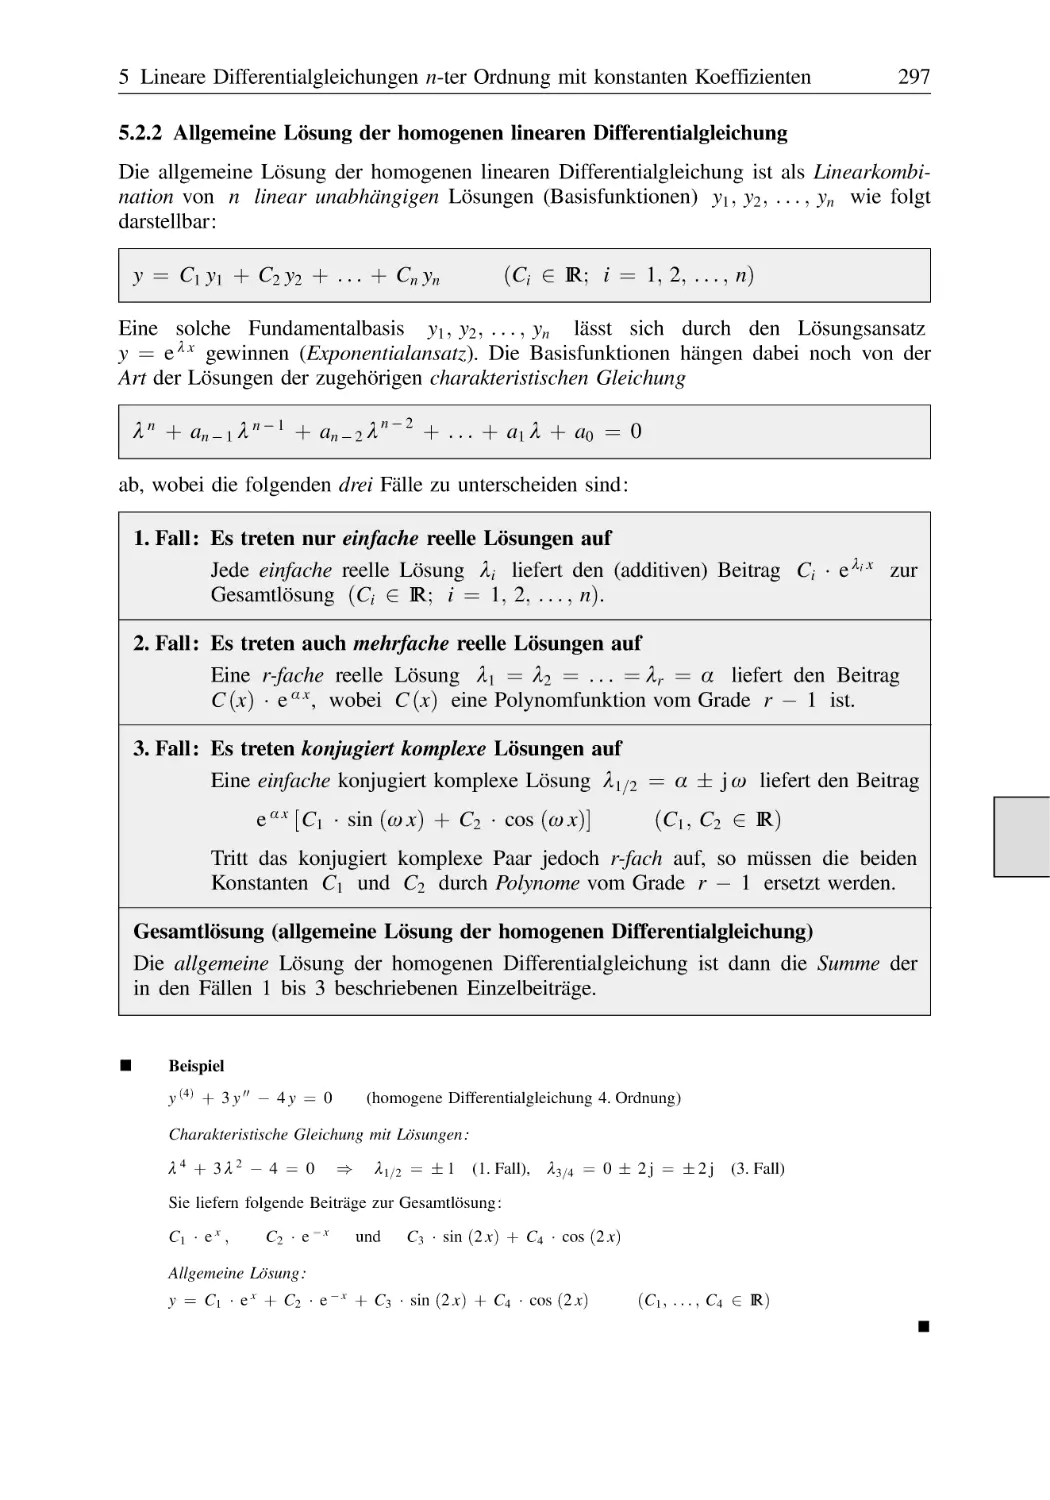 5.2.2 Allgemeine Lösung der homogenen linearen Differentialgleichung